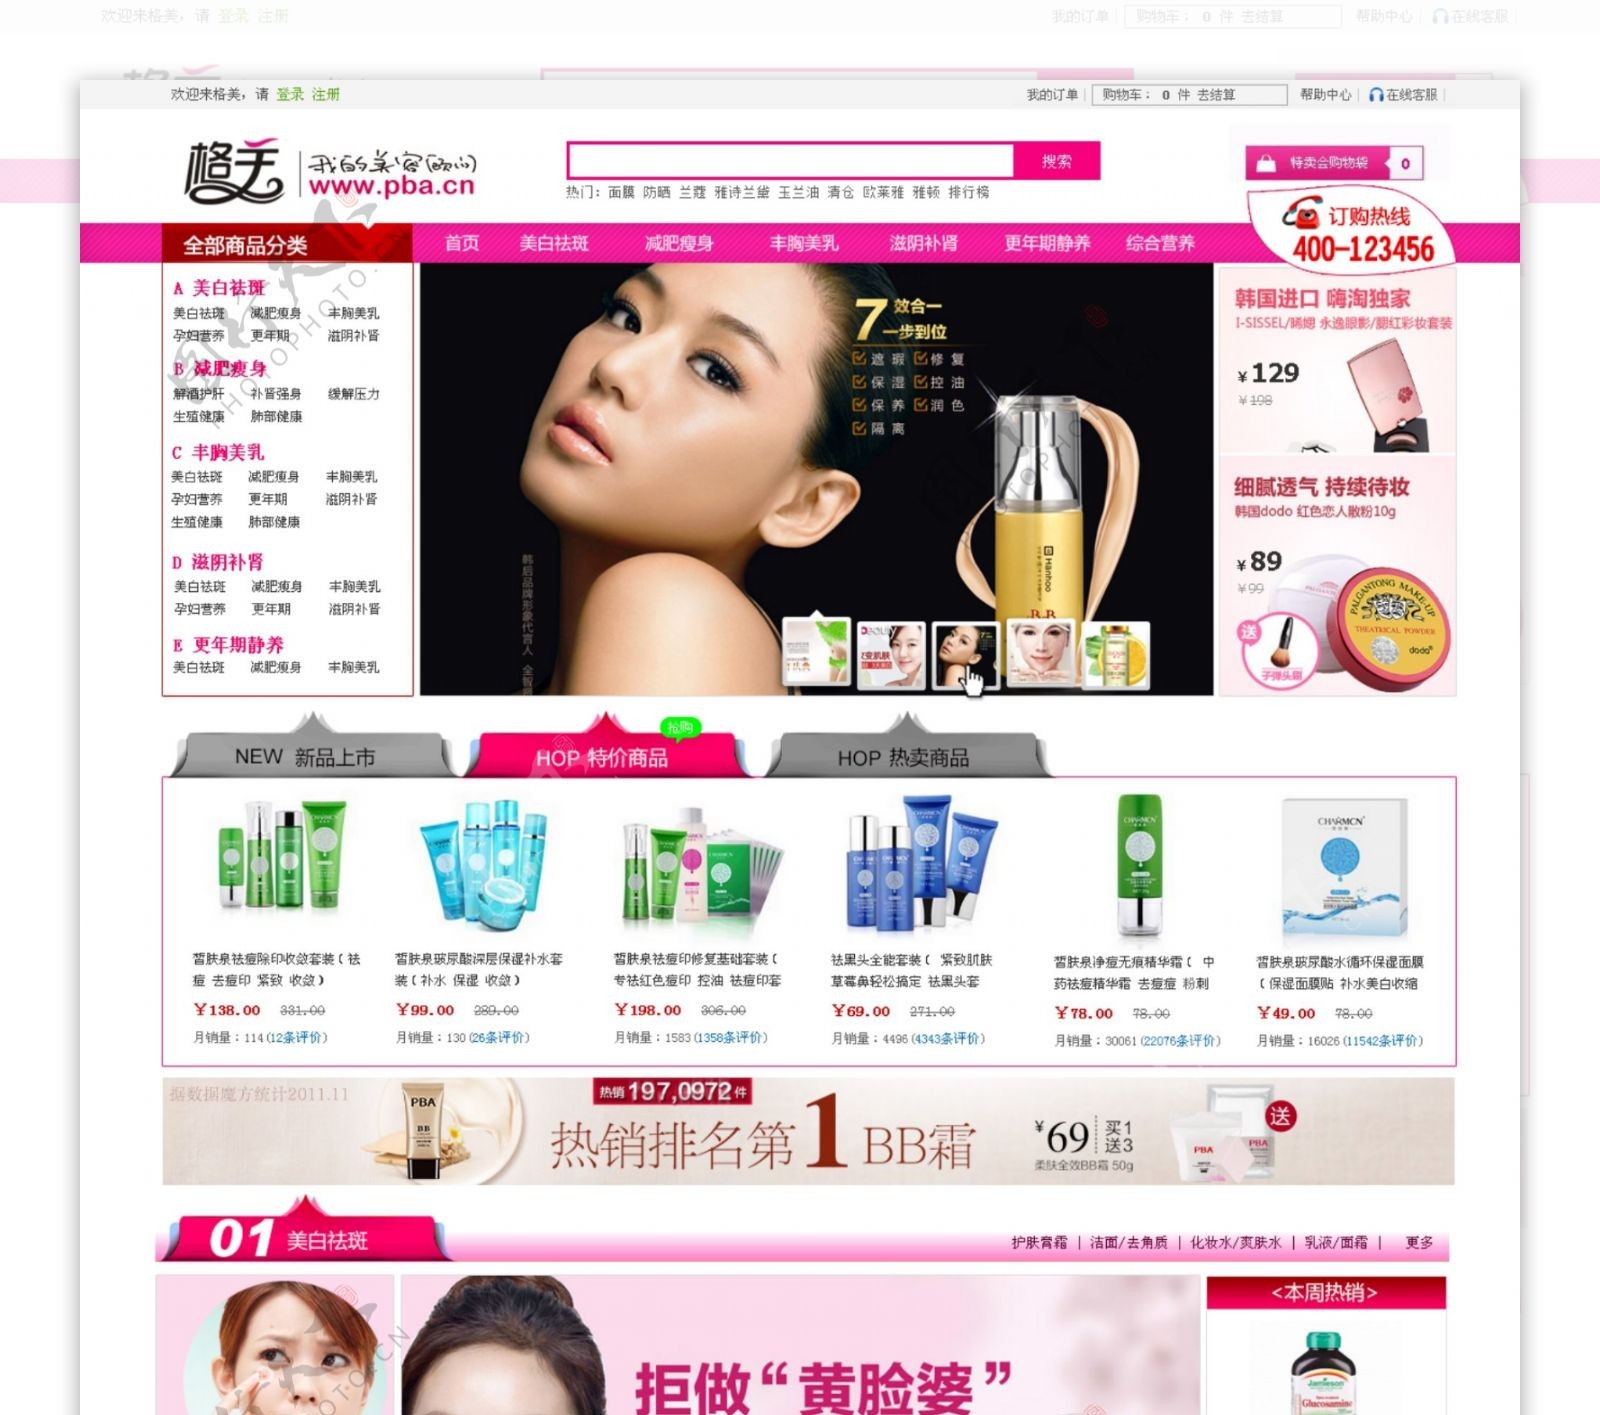 商城购物网站化妆品图片